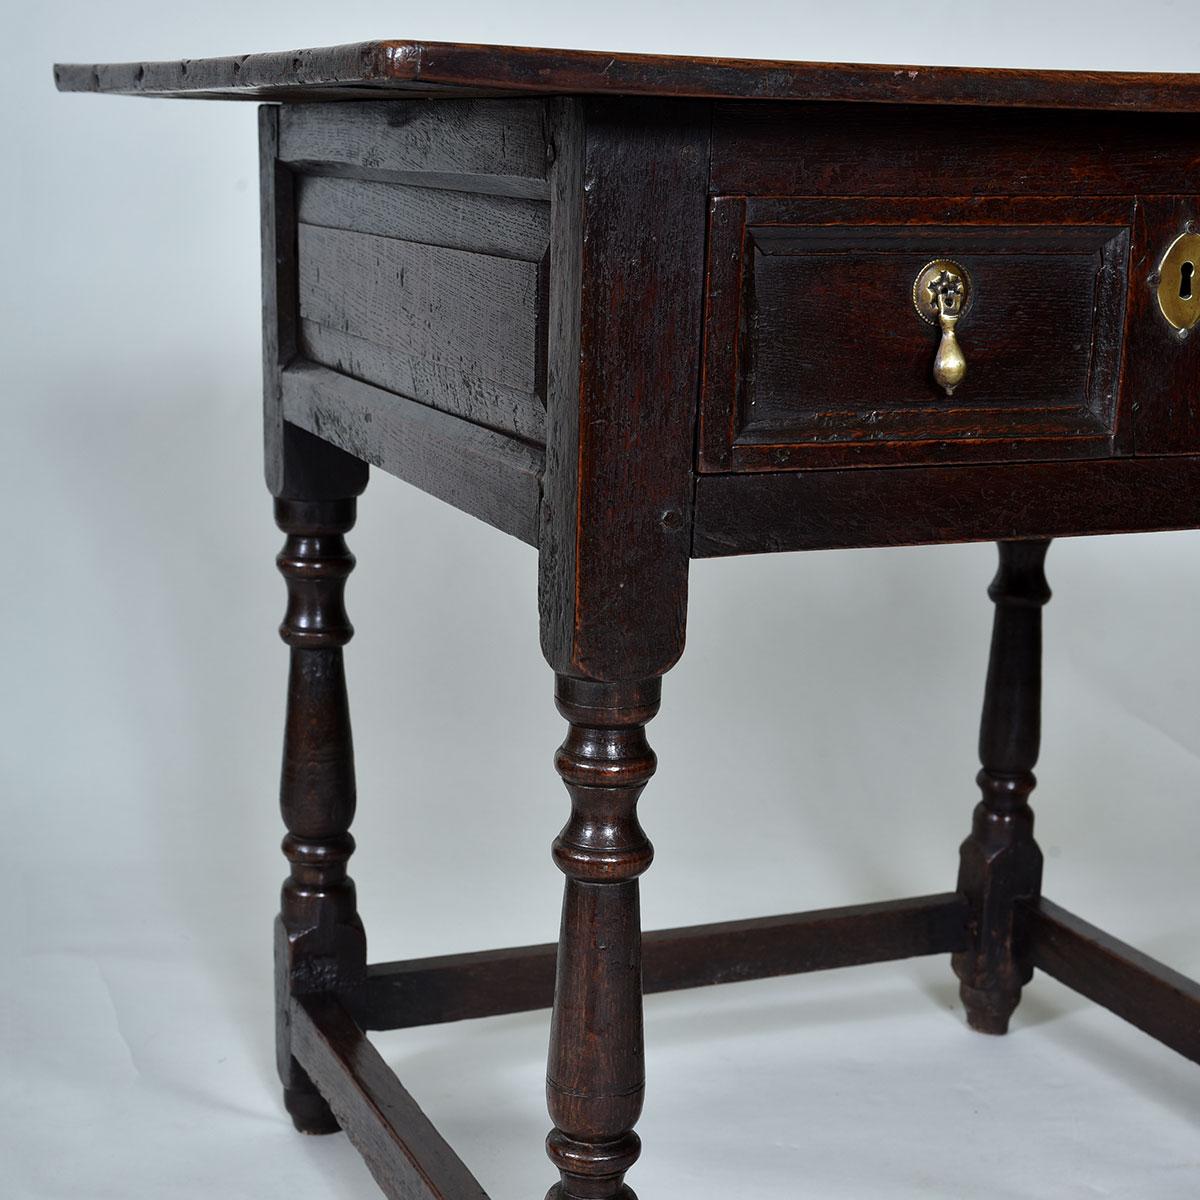 17th century Oak Side Table